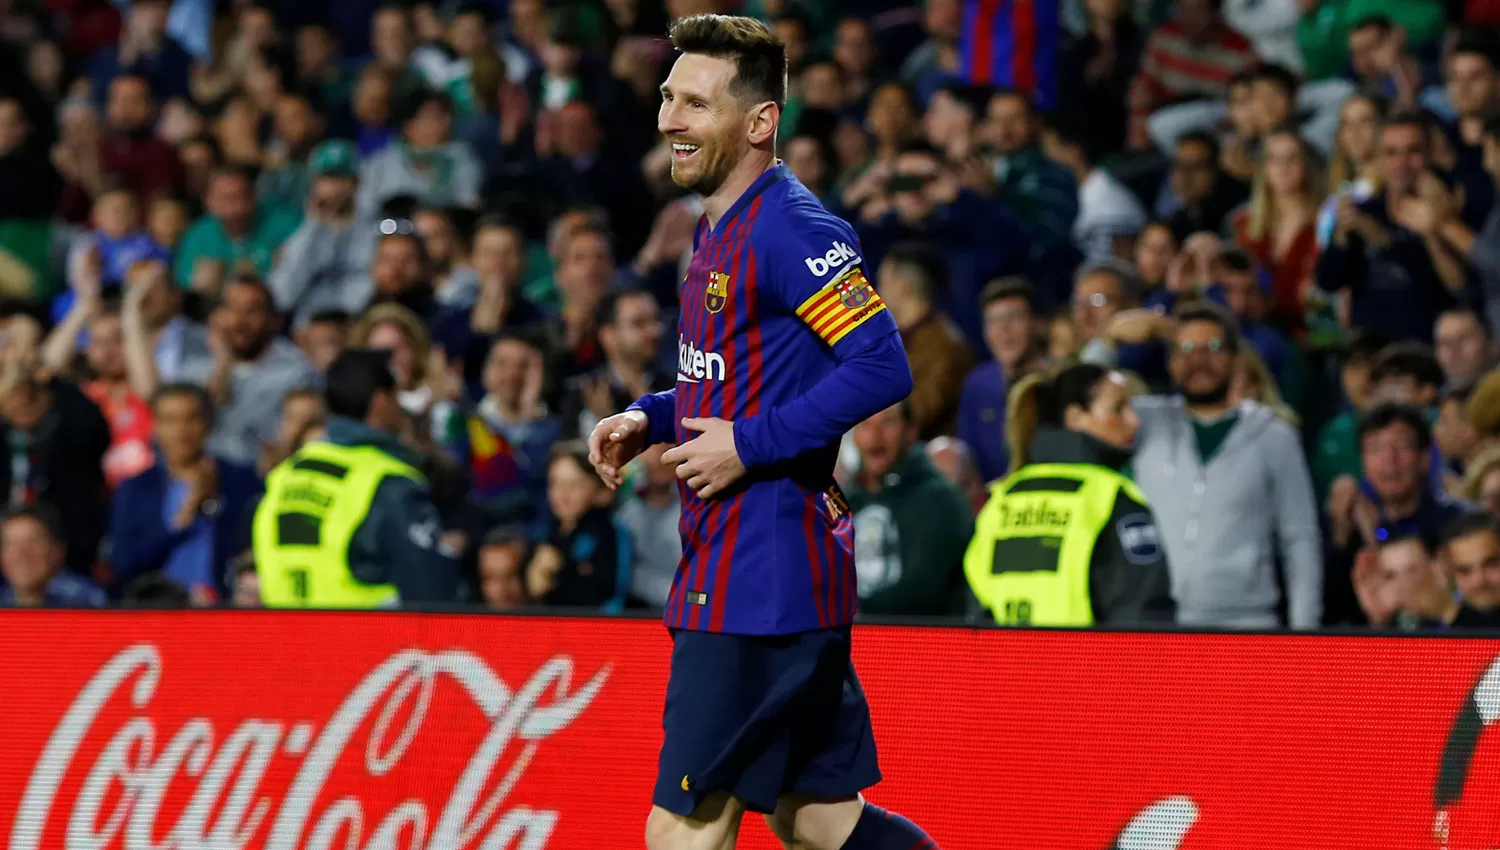 Messi la rompió y regresará inspirado a la Selección argentina. REUTERS